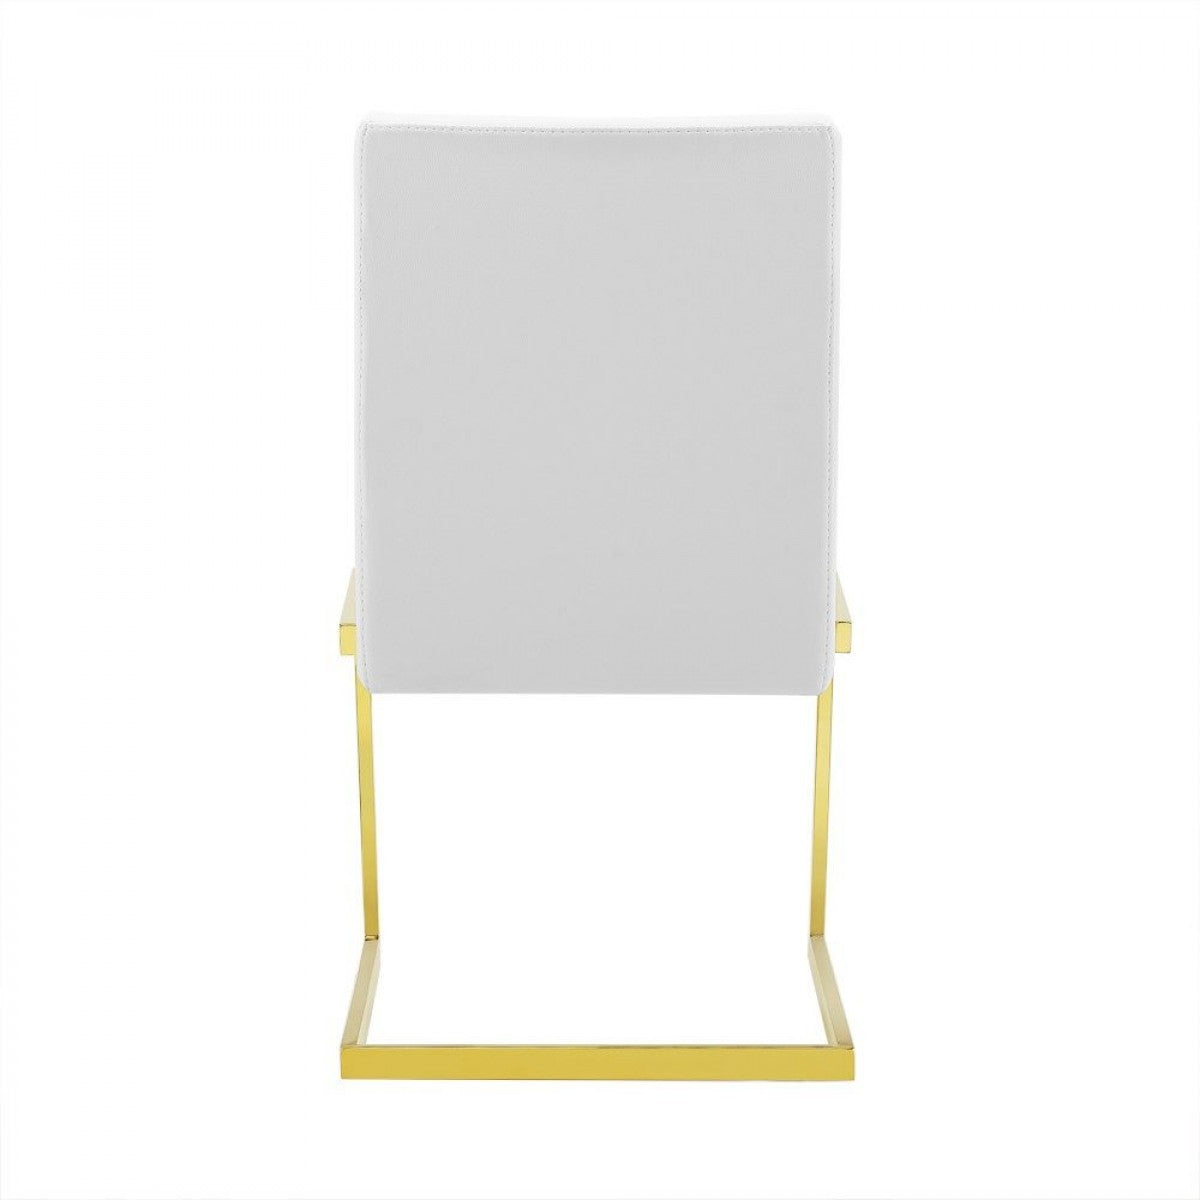 Modrest Batavia - Modern White Dining Chair (Set of 2)